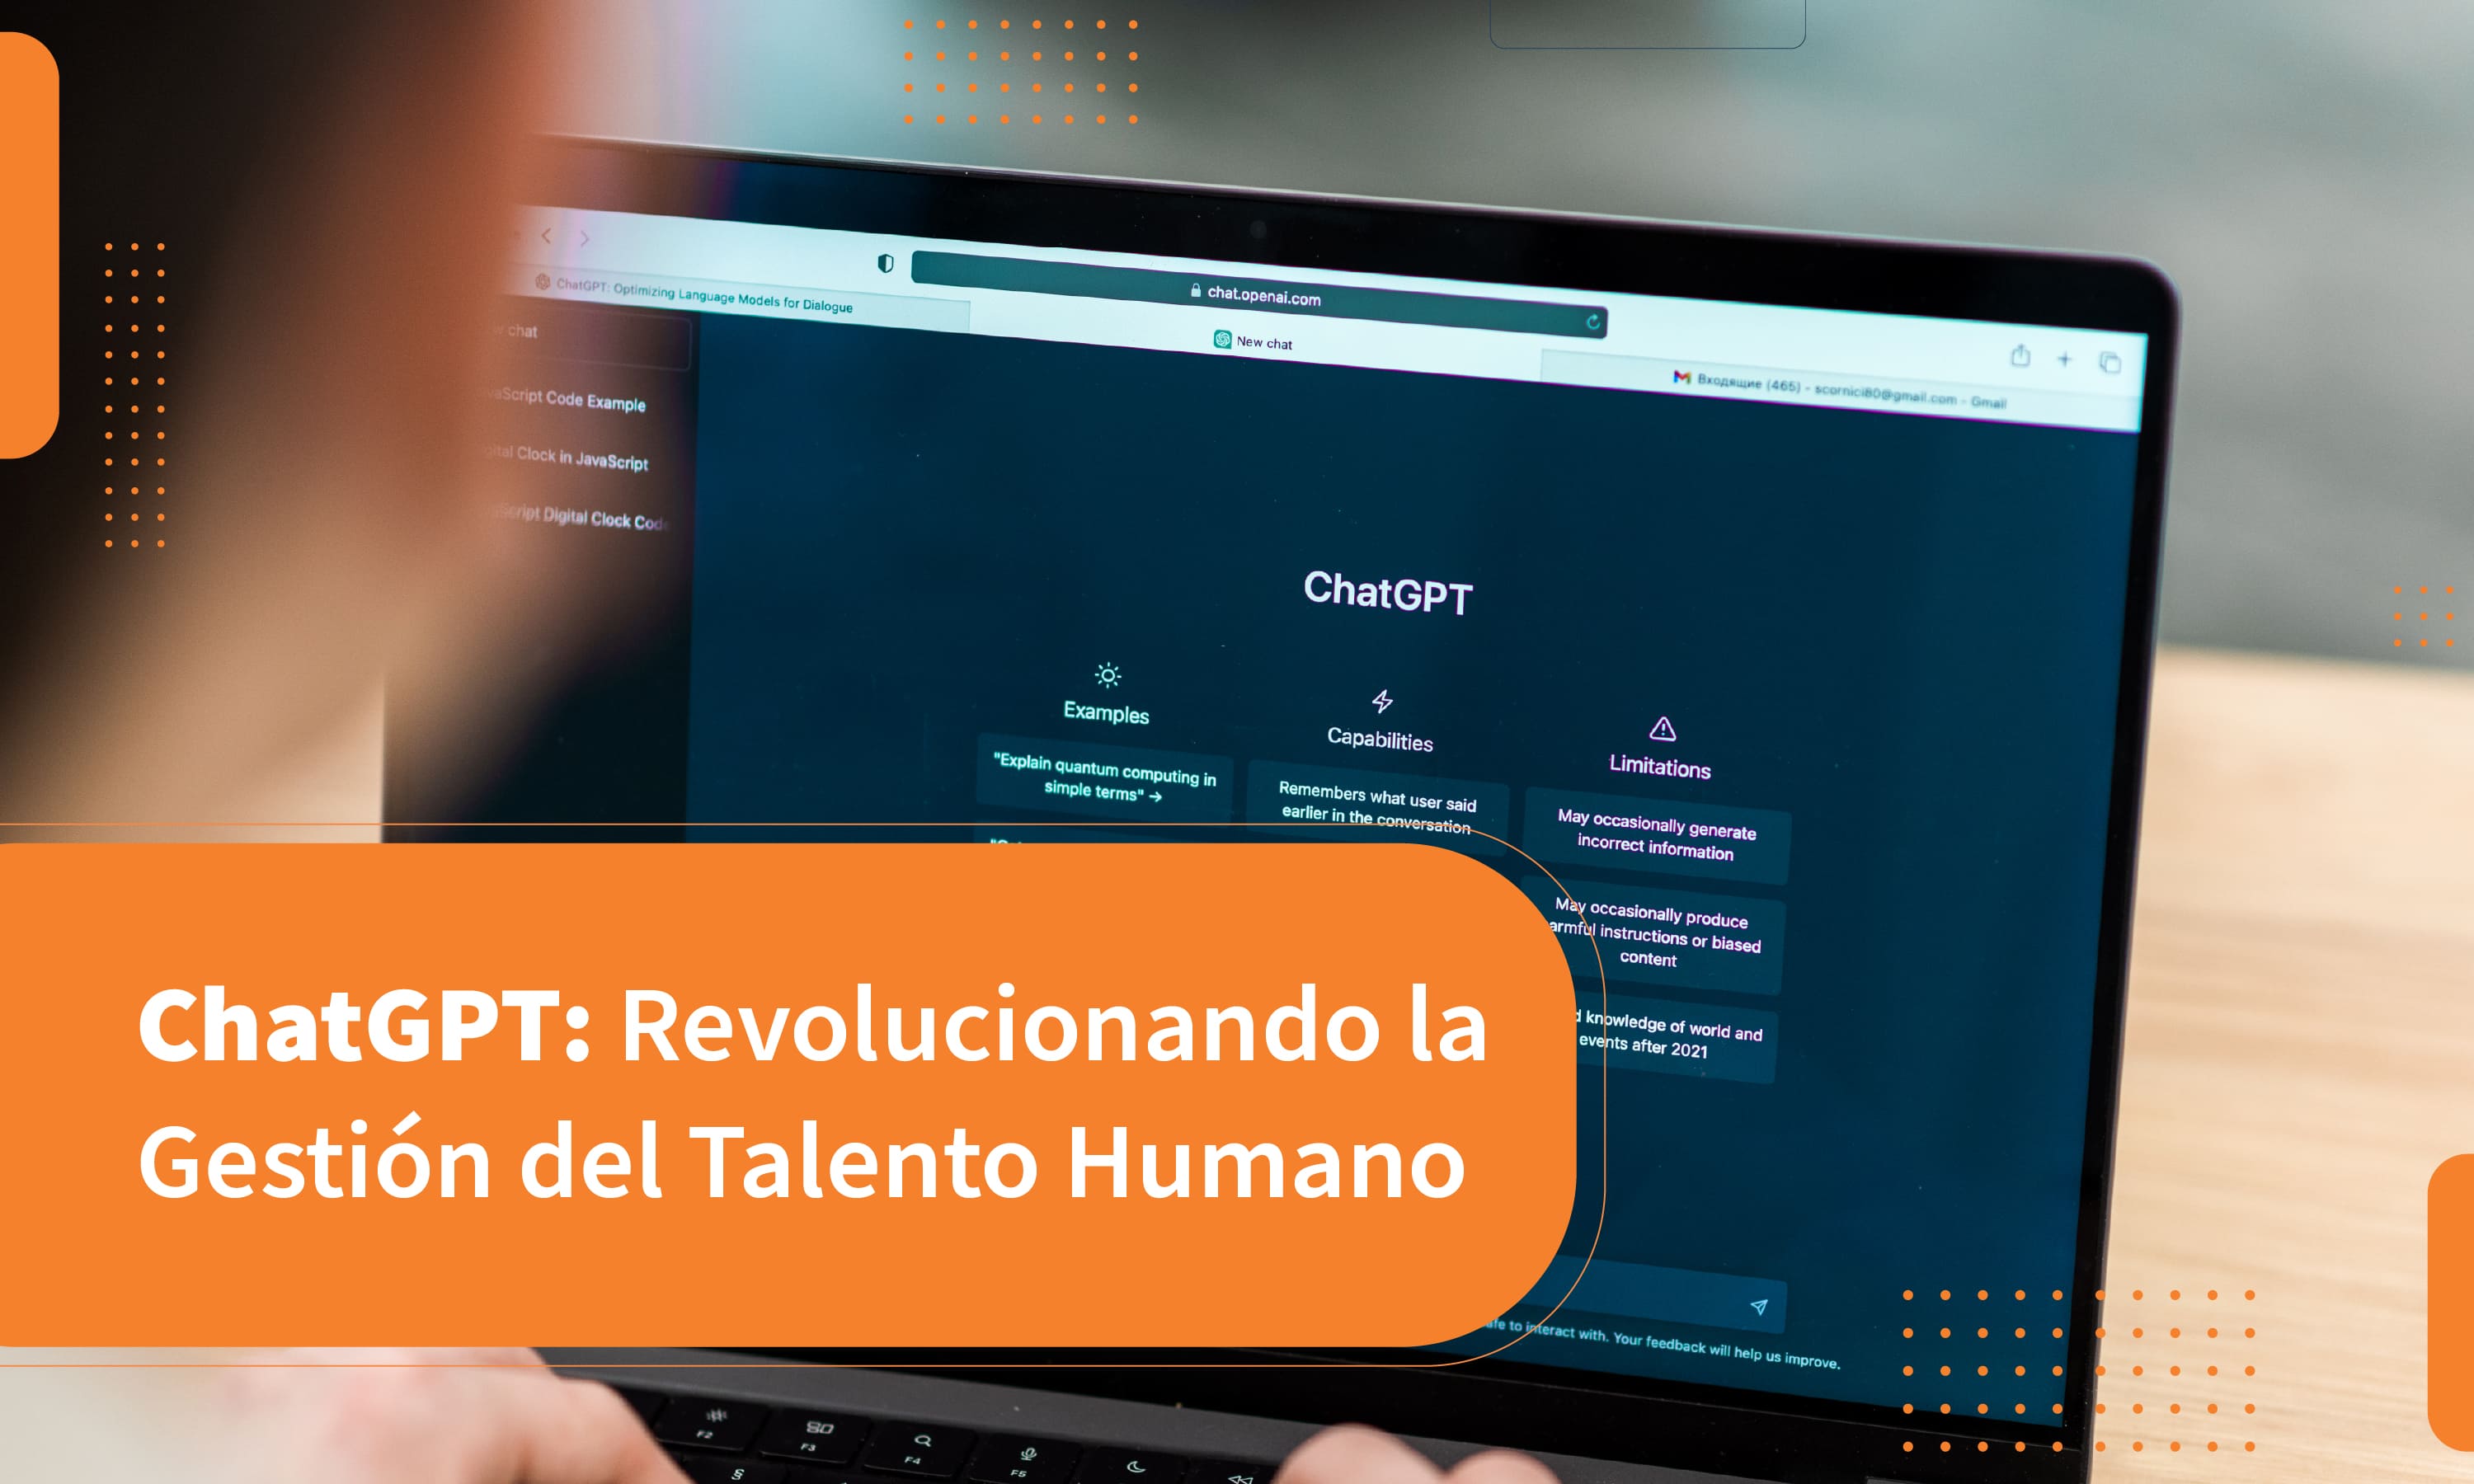 ChatGPT: Revolucionando la Gestión del Talento Humano